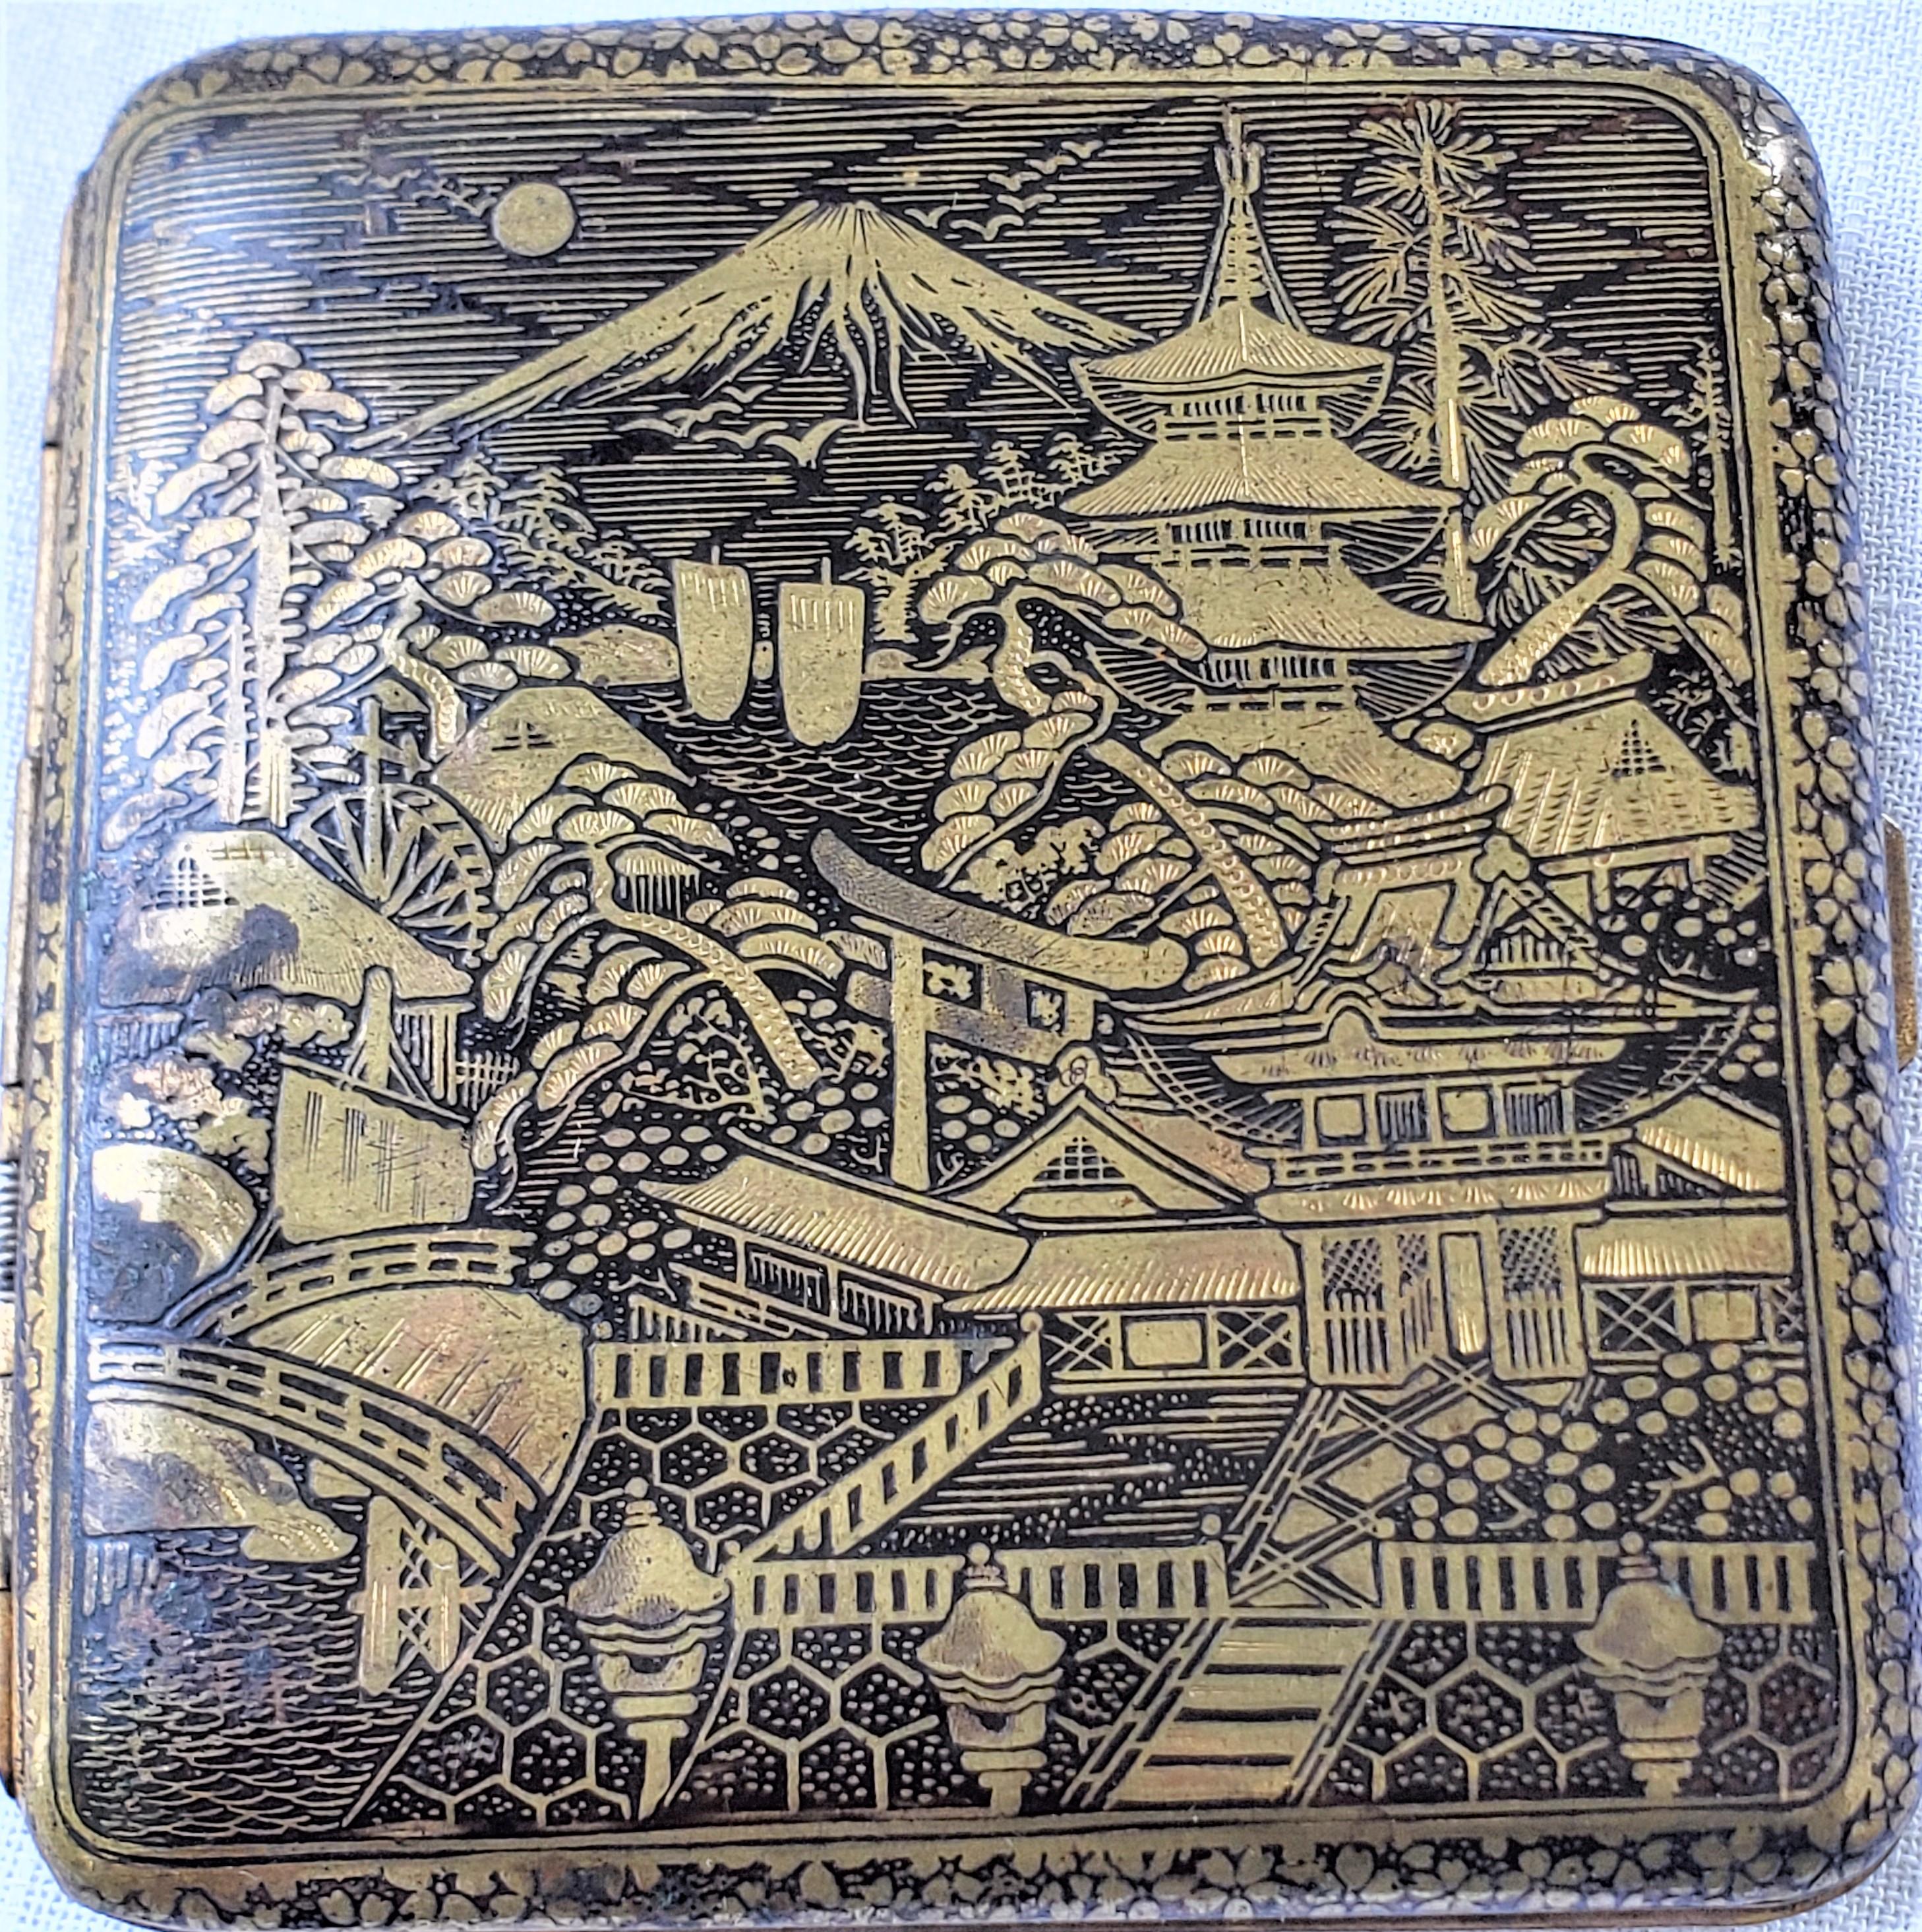 Antique Japanese Damascene Cigarette Case with Ornate Mt. Fuji & Dragon Decor In Good Condition For Sale In Hamilton, Ontario